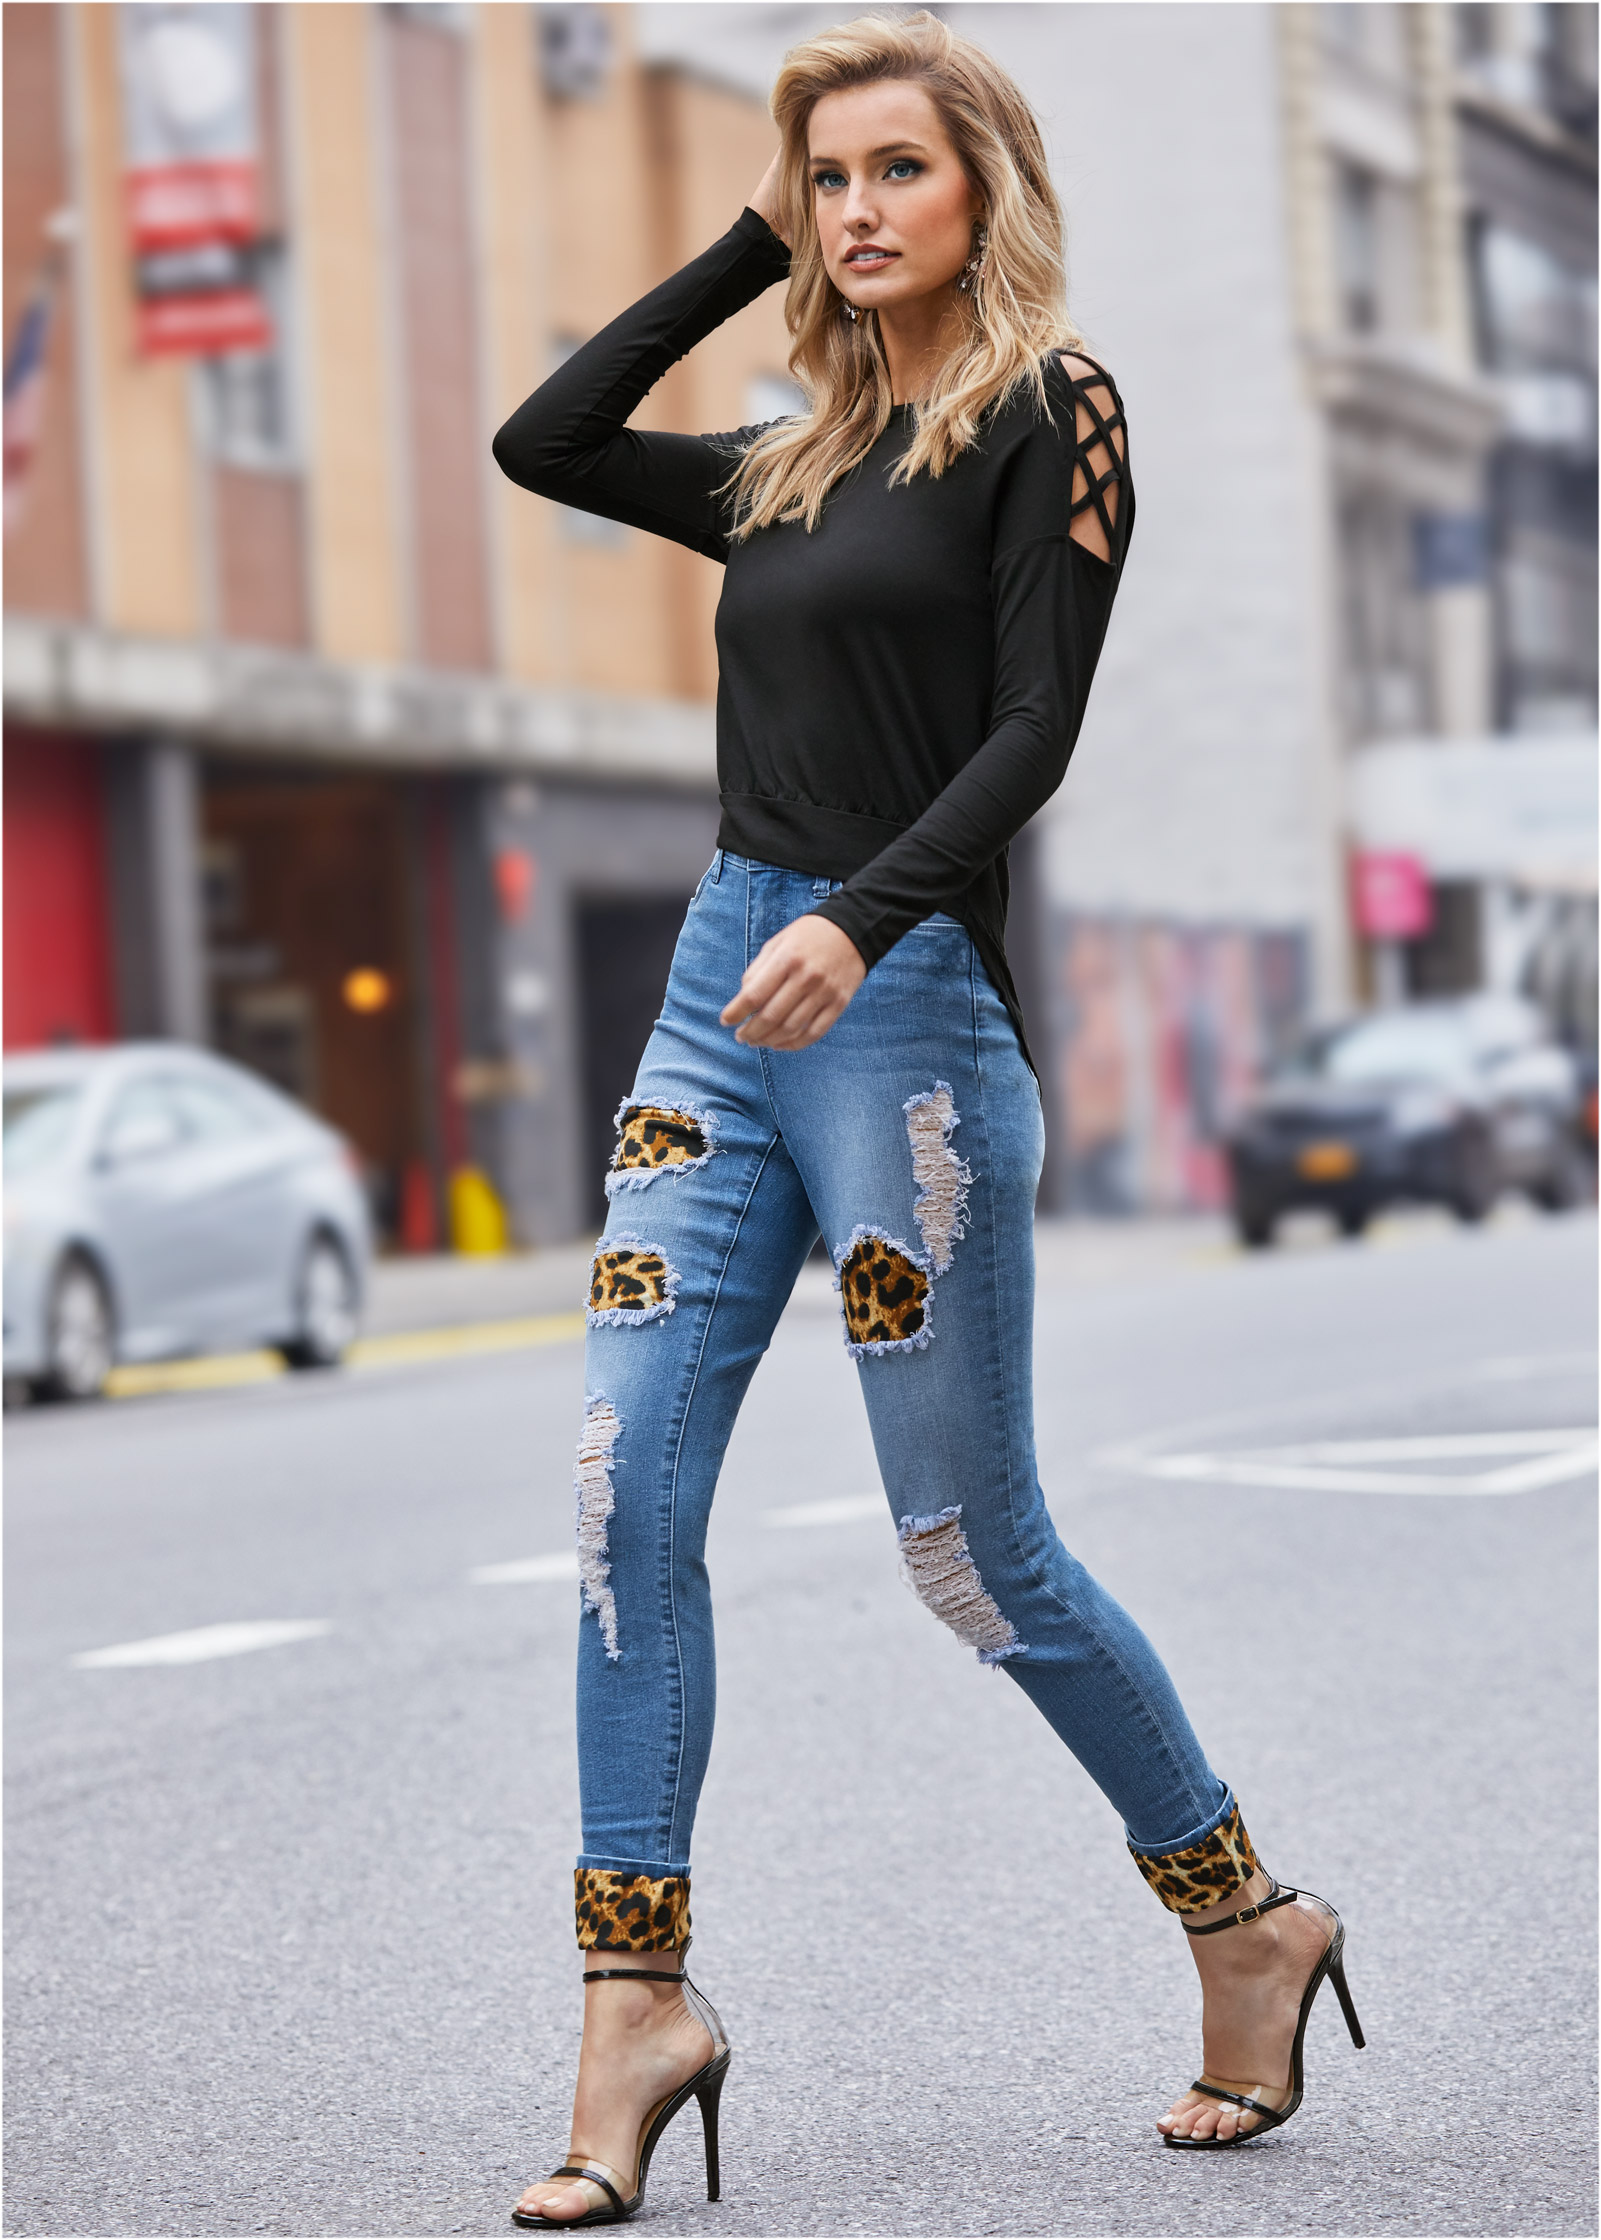 leopard jeans women